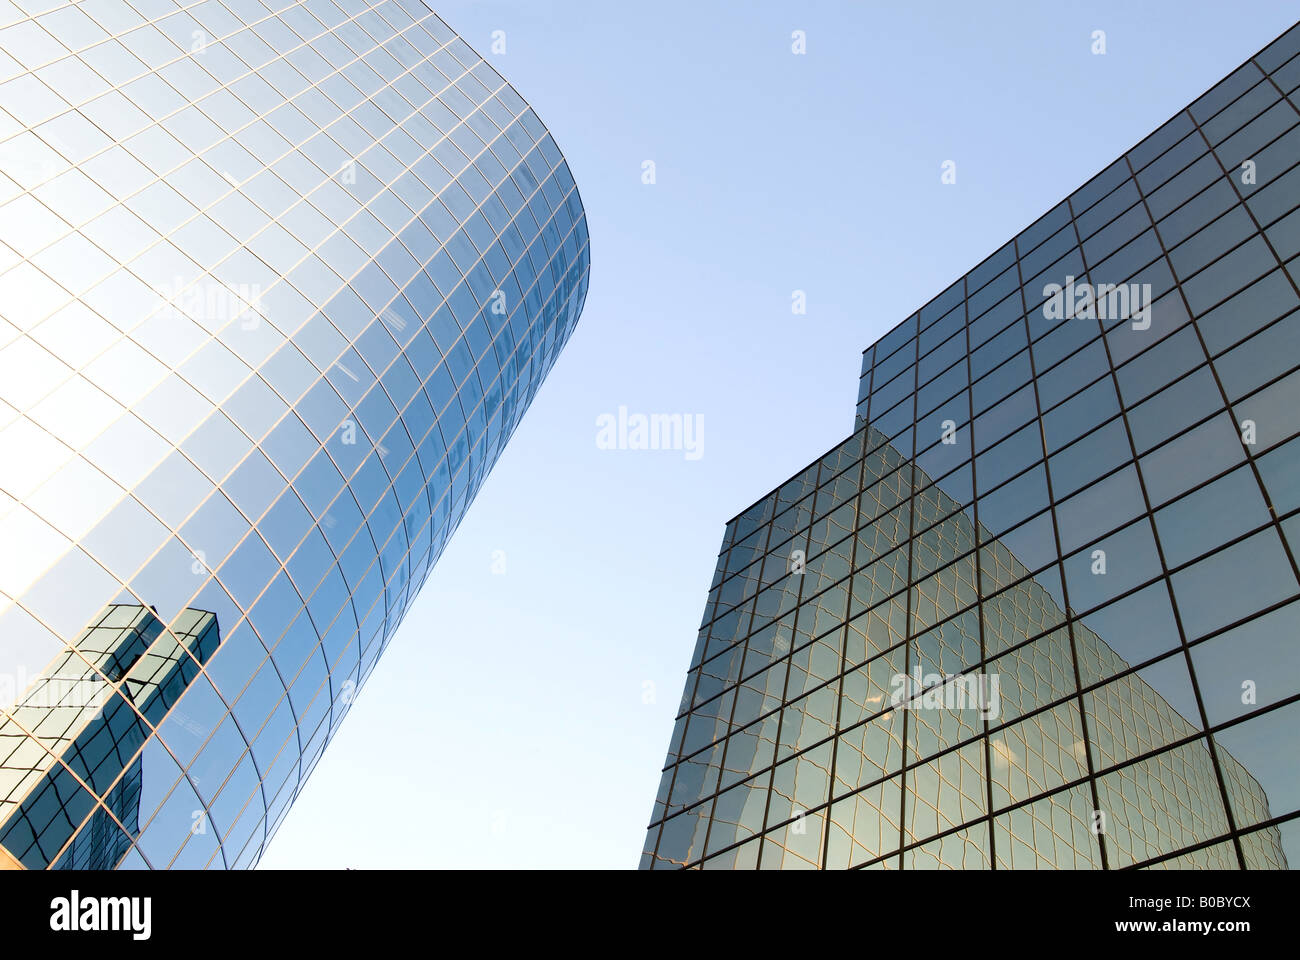 Un business skyrise con vetro riflettente in un quartiere degli affari Foto Stock